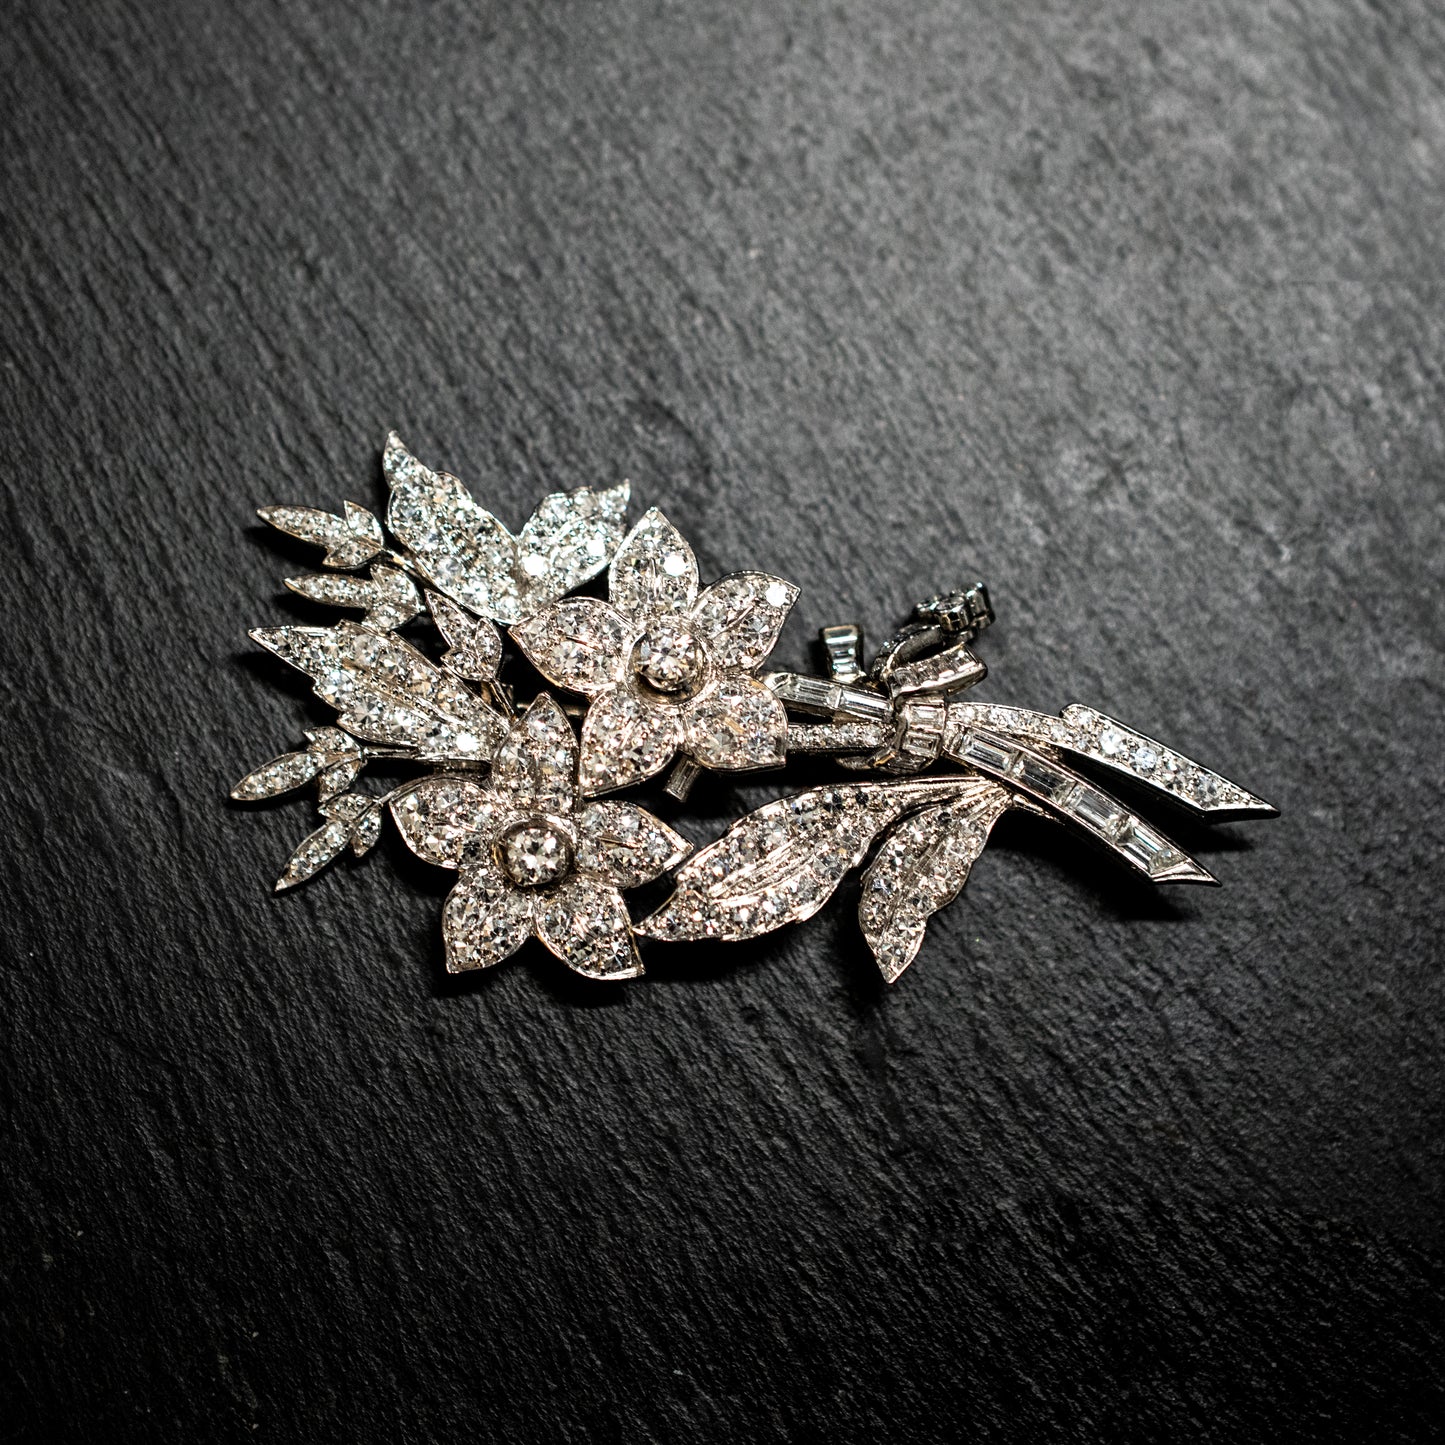 One precious white metal diamond set floral spray brooch